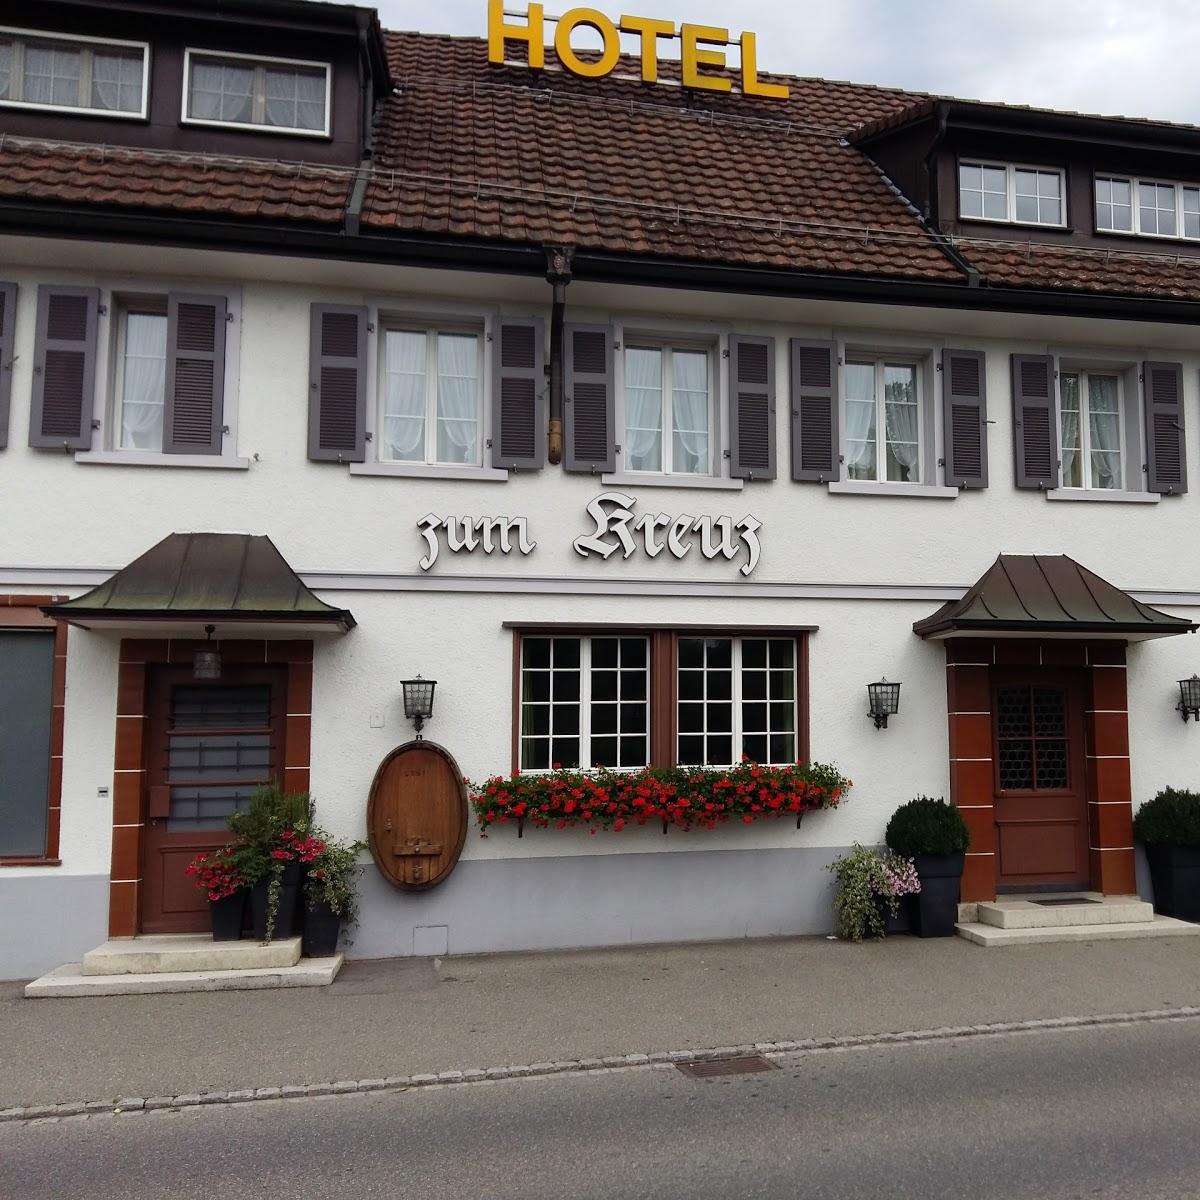 Restaurant "Kreuz" in Kaiserstuhl